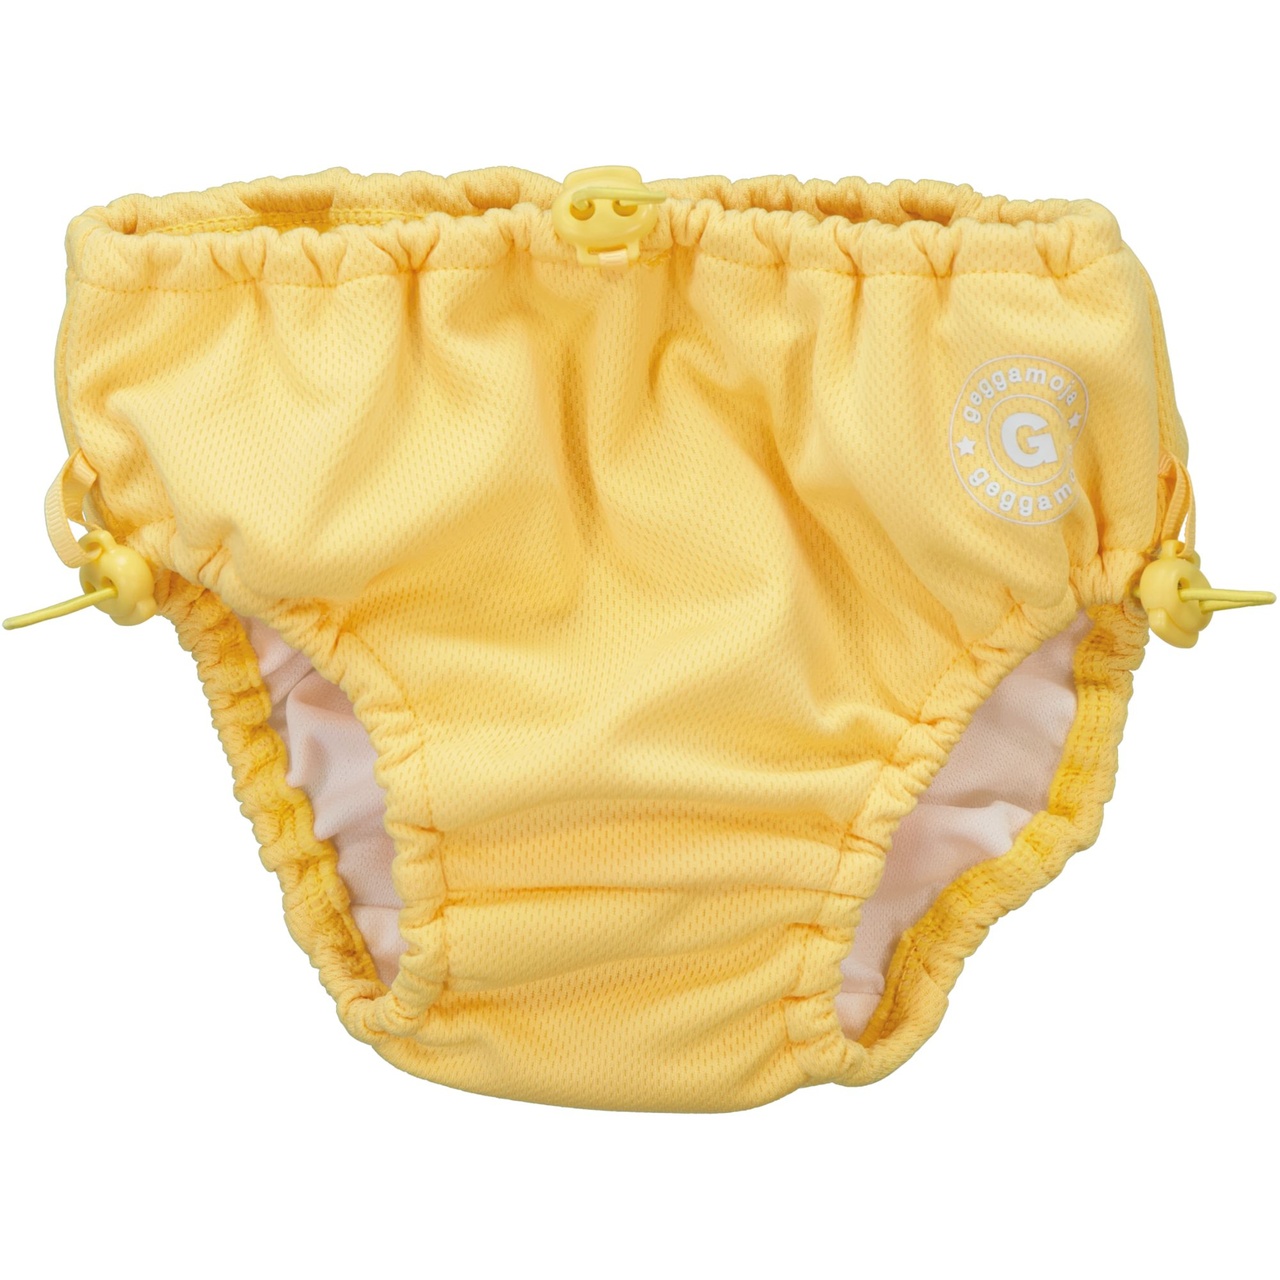 UV Baby swim pant Yellow  74/80